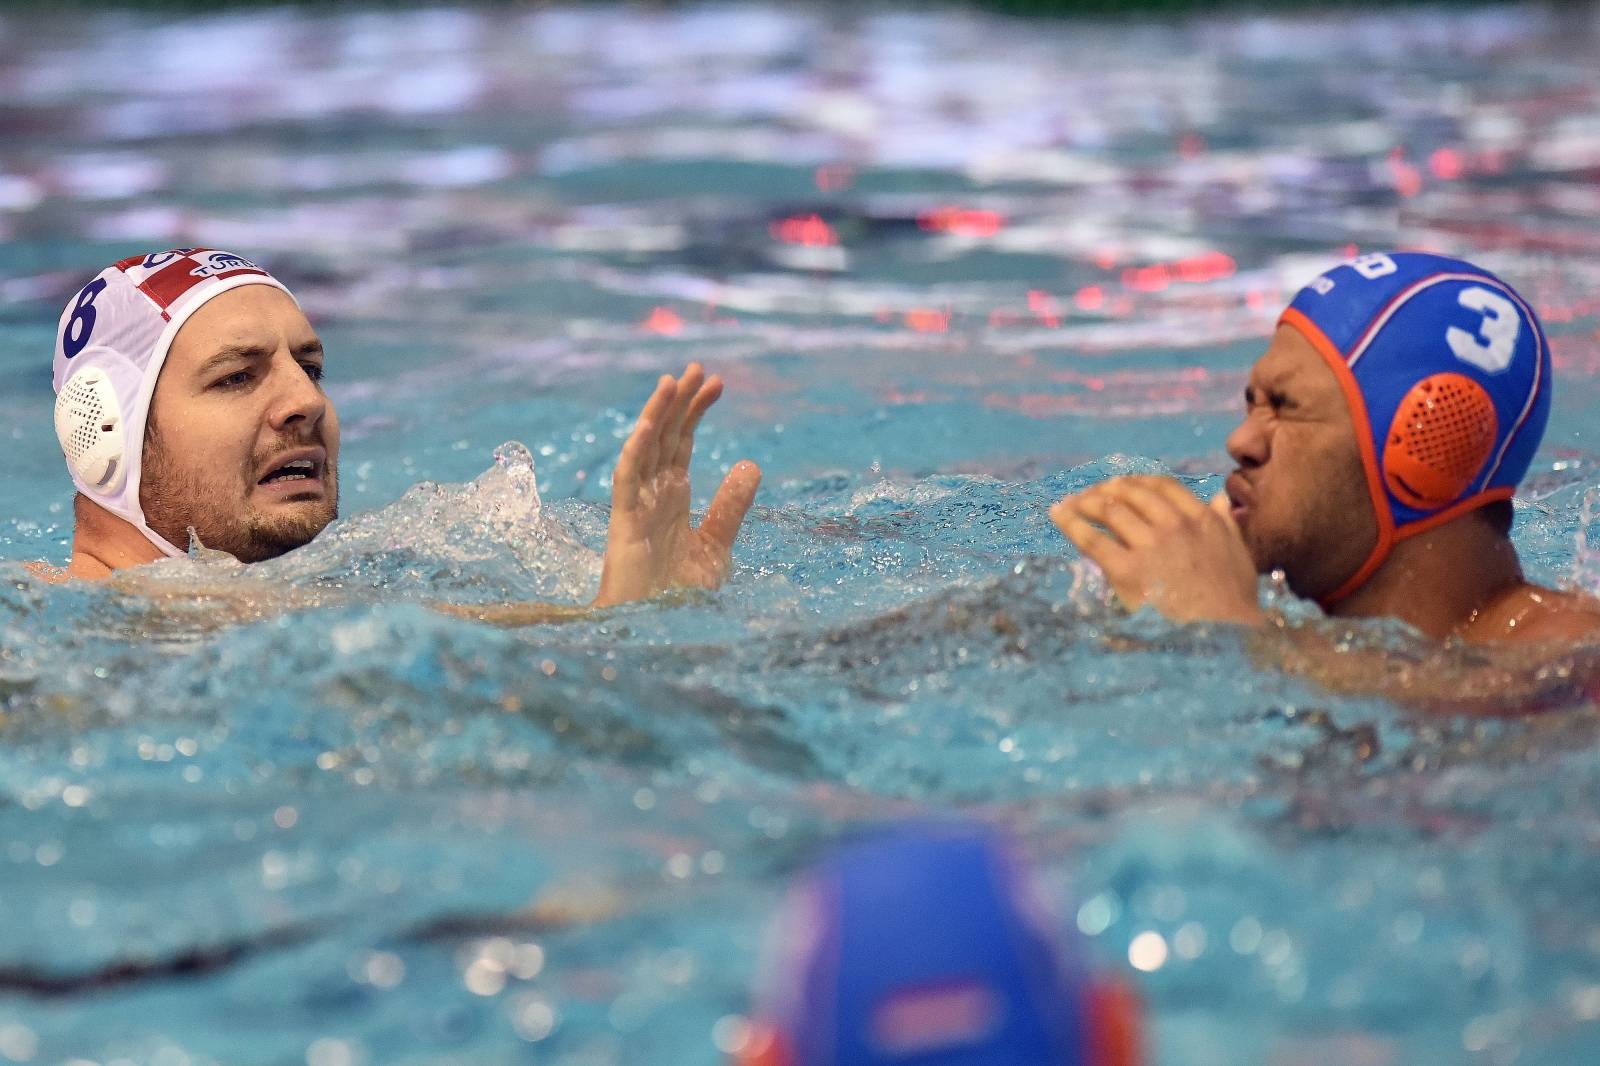 Hrvatska i Nizozemska susrele se u posljednjem kolu skupine B europskih kvalifikacija